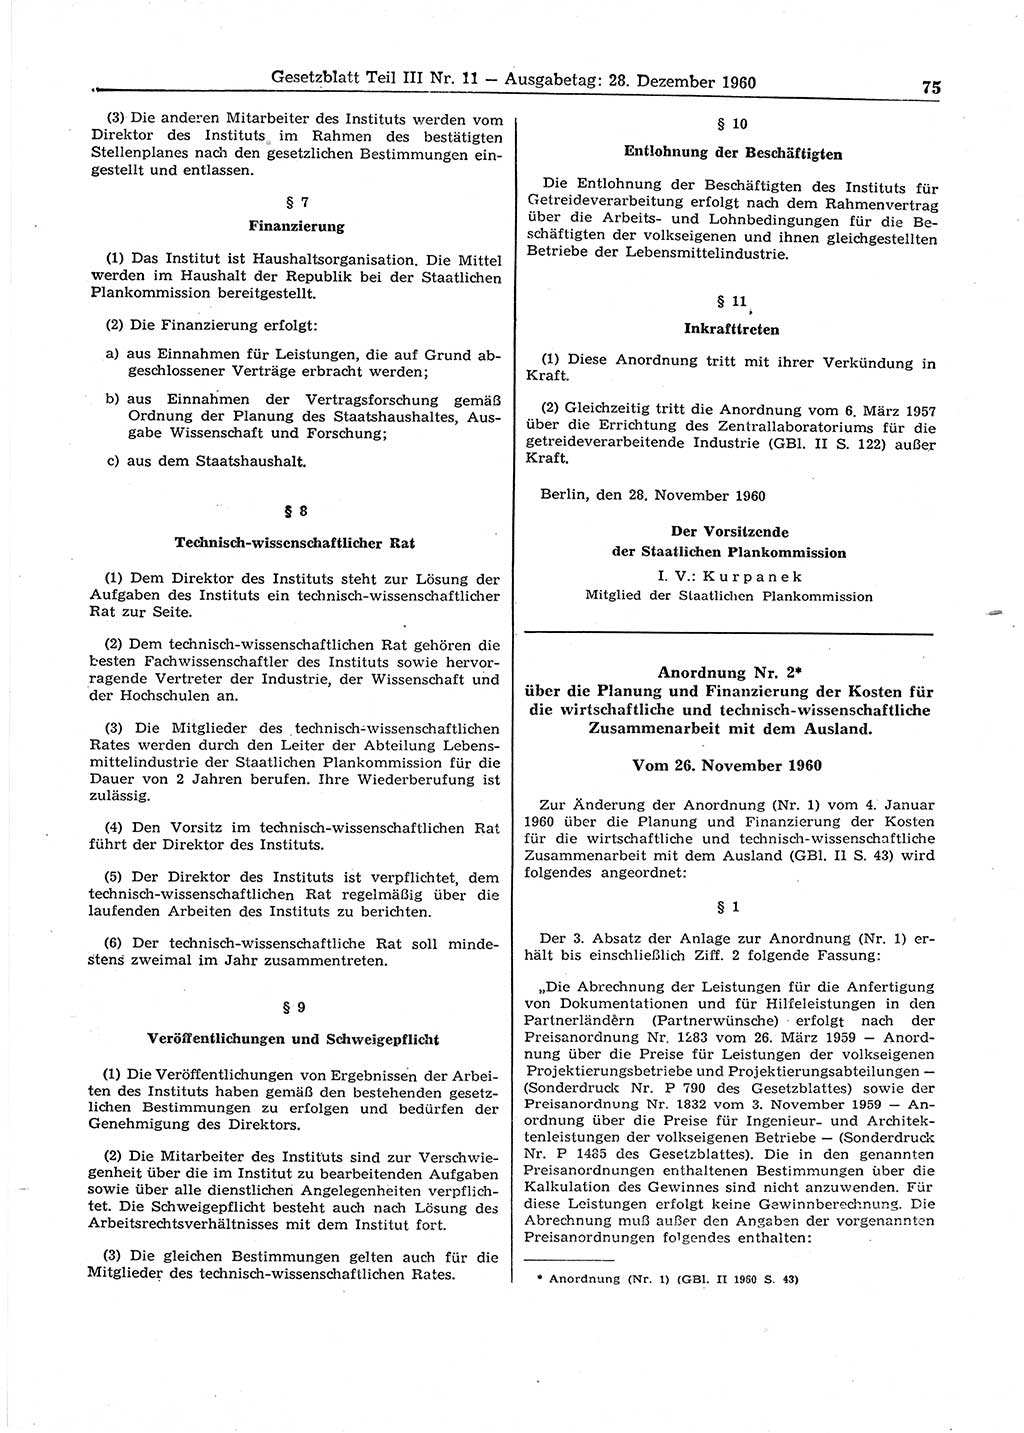 Gesetzblatt (GBl.) der Deutschen Demokratischen Republik (DDR) Teil ⅠⅠⅠ 1960, Seite 75 (GBl. DDR ⅠⅠⅠ 1960, S. 75)